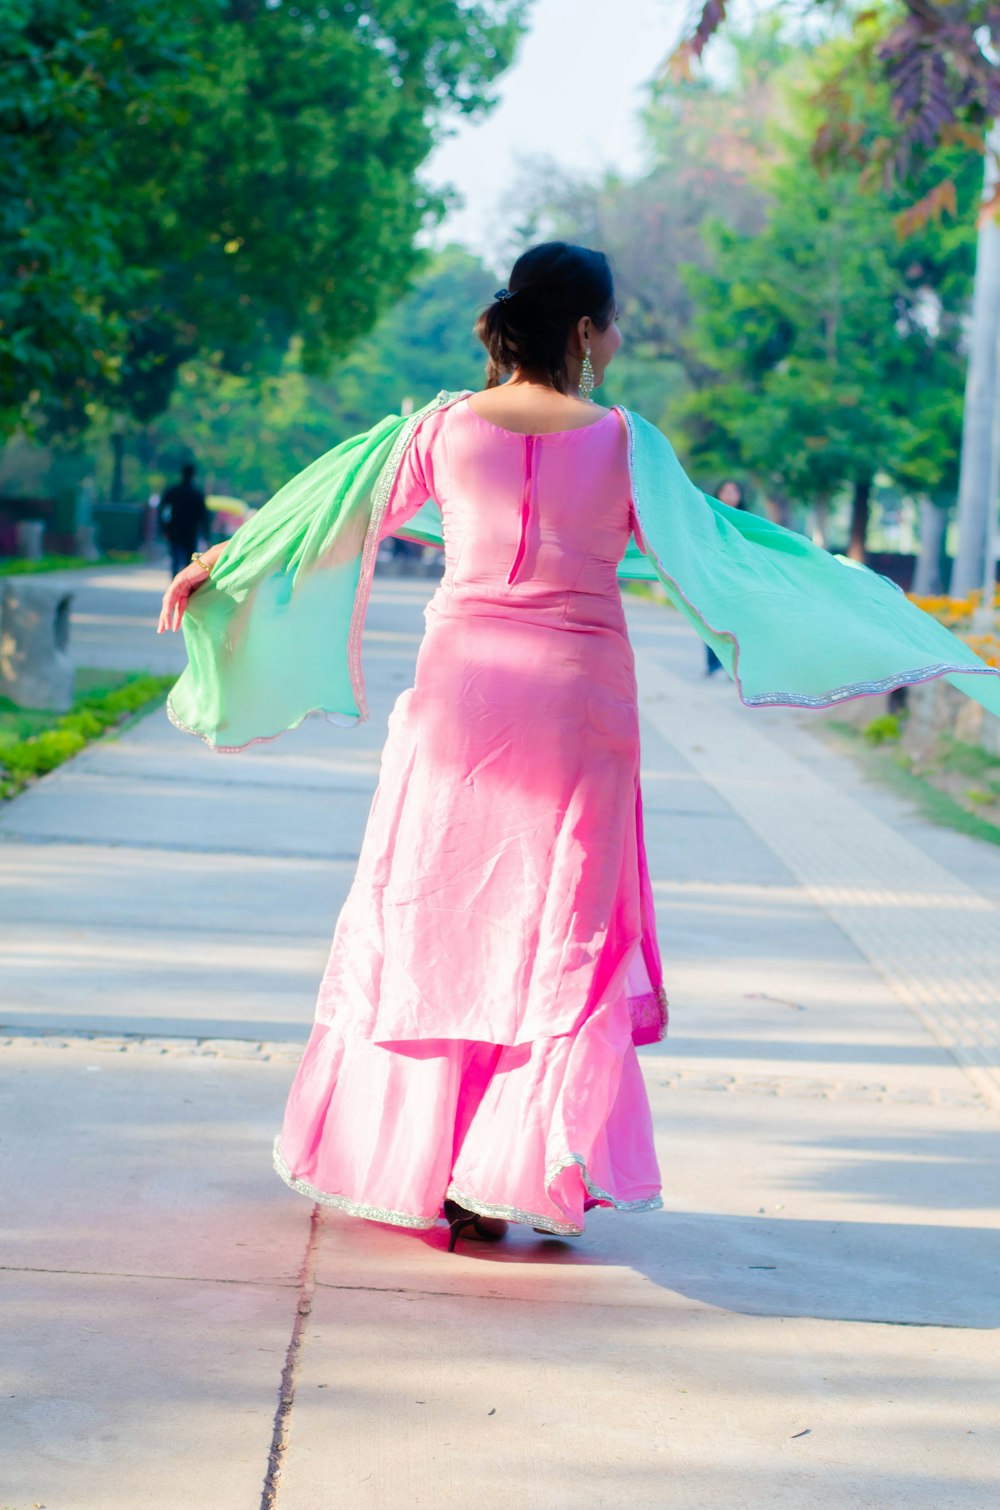 woman in pink dress holding umbrella walking on street during daytime